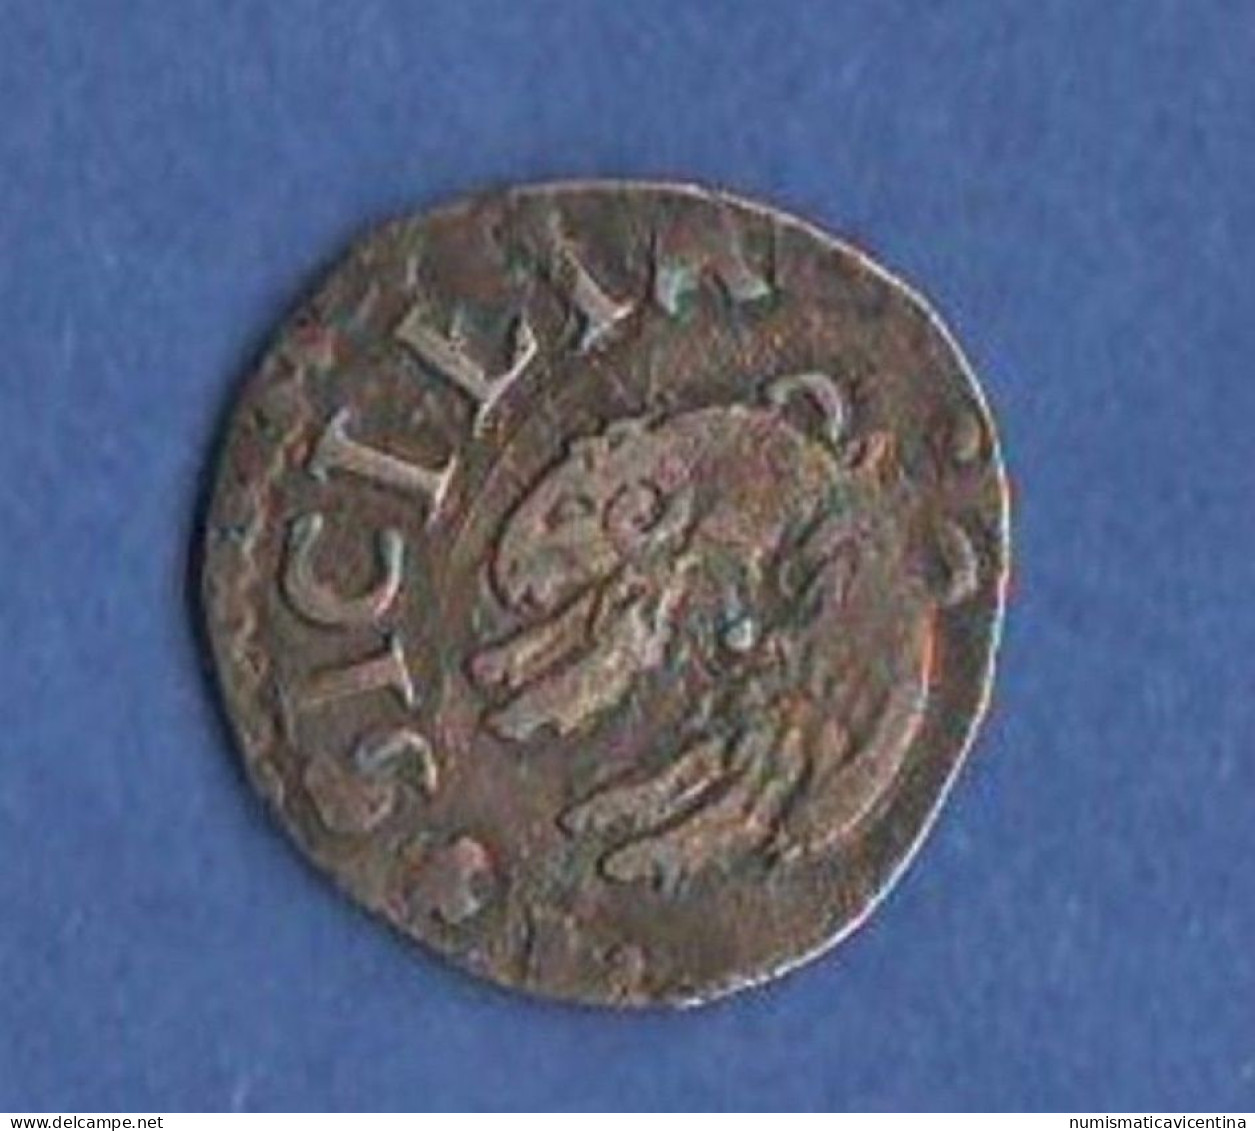 Napoli Mezzo Carlino O Zanetta Naples & Sicily Filippo III° Naples Silver Coin - Nápoles & Sicile